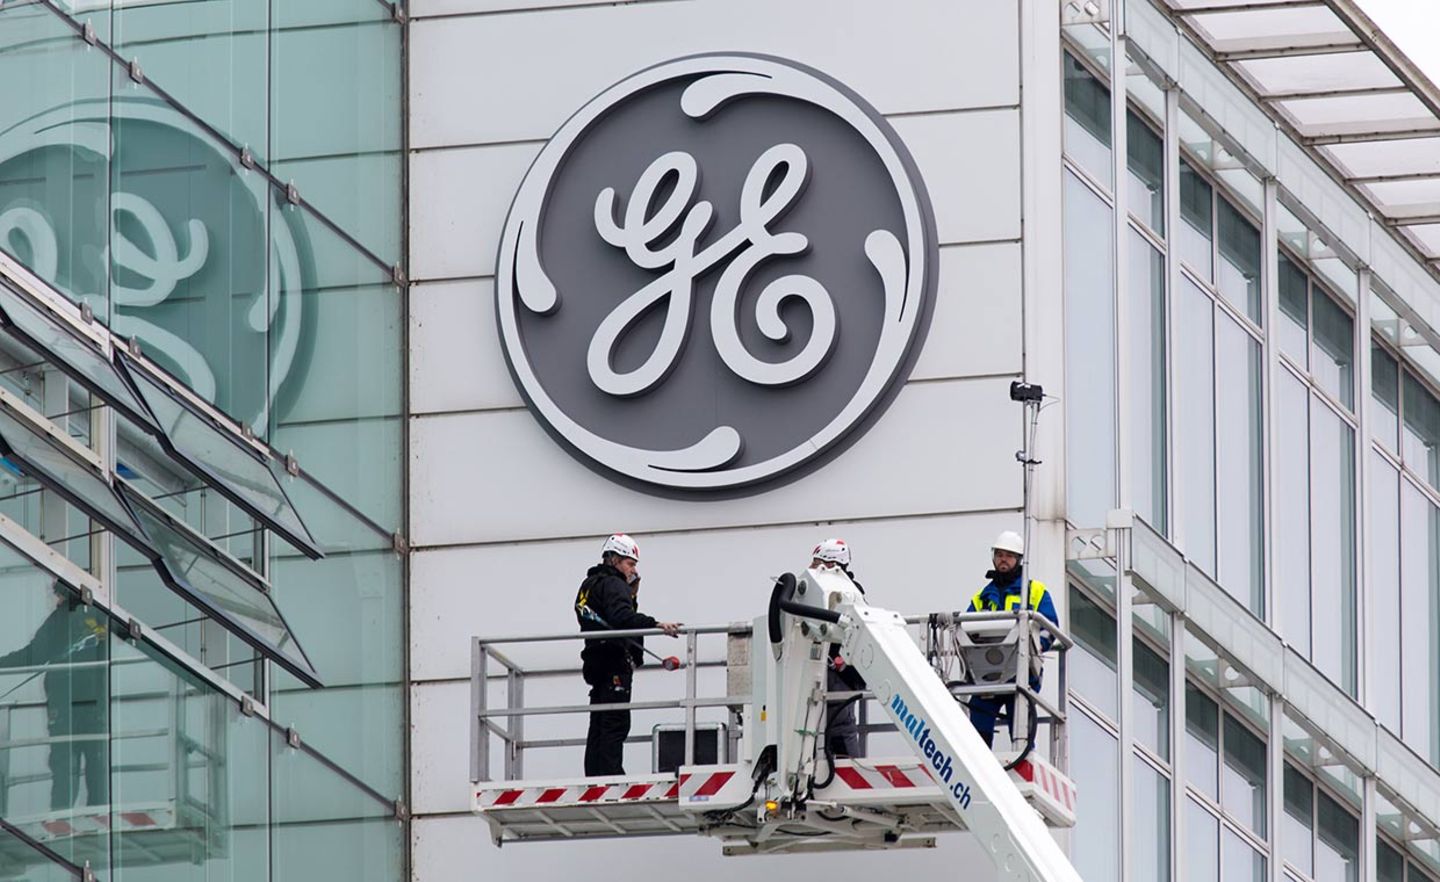 Das Logo von General Electric an der Fassade der Konzernzentrale in Cincinnati steht für einen 126 Jahre alten Industrieriesen. Der angekündigte Umbau kommt einer Zerschlagung gleich.